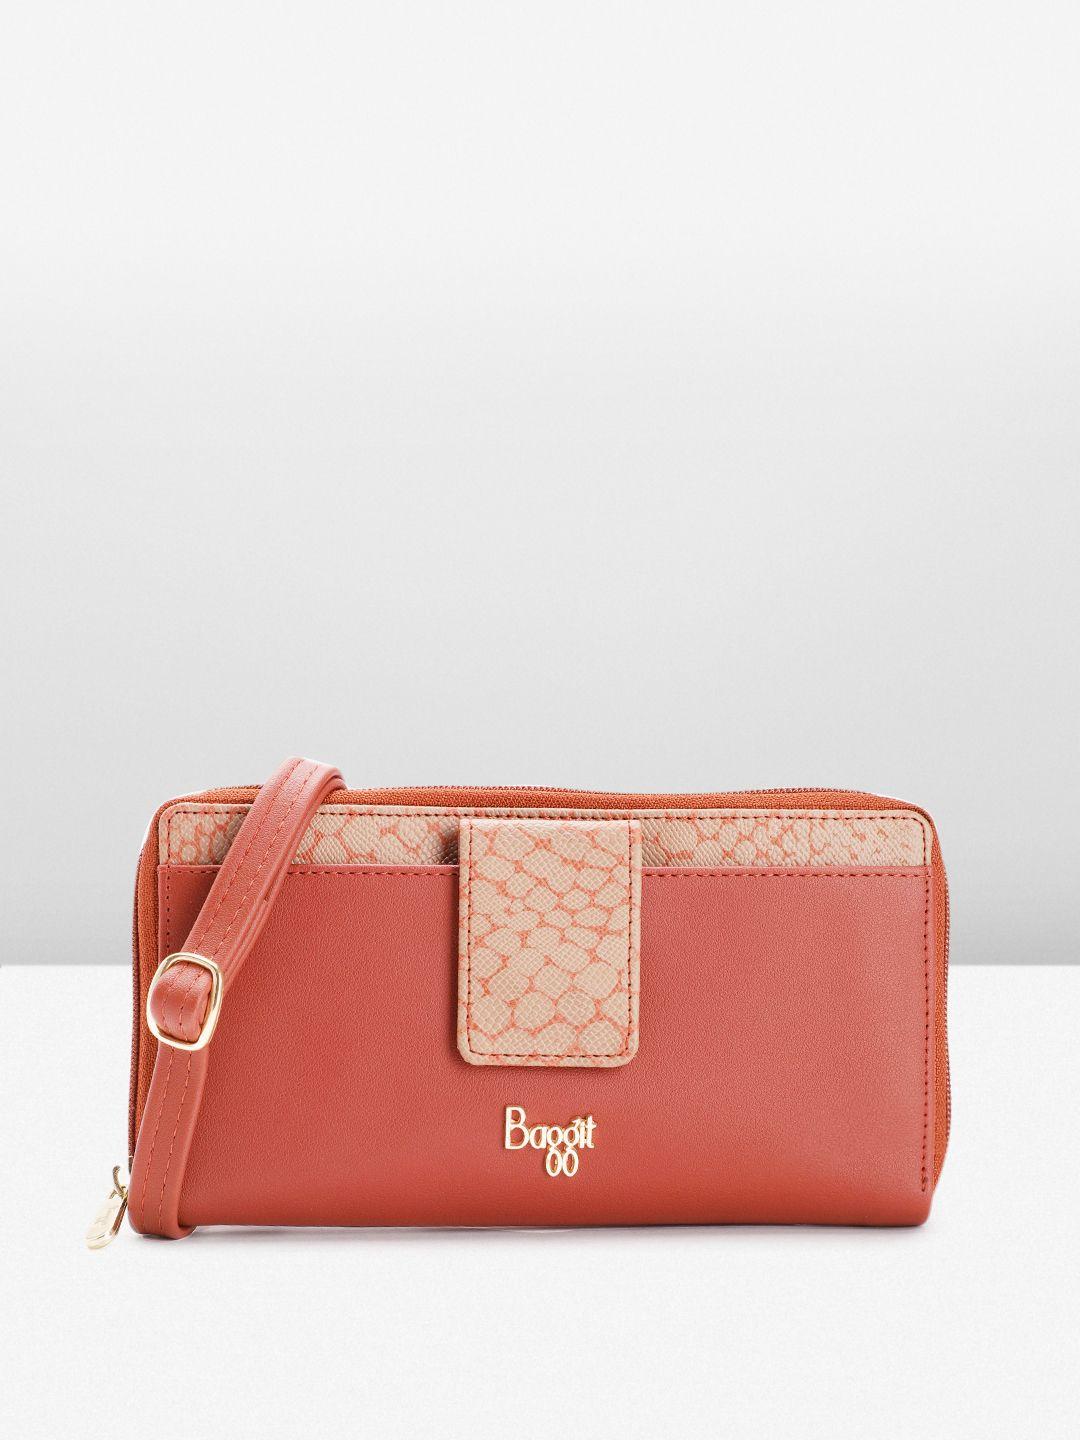 baggit women zip around wallet